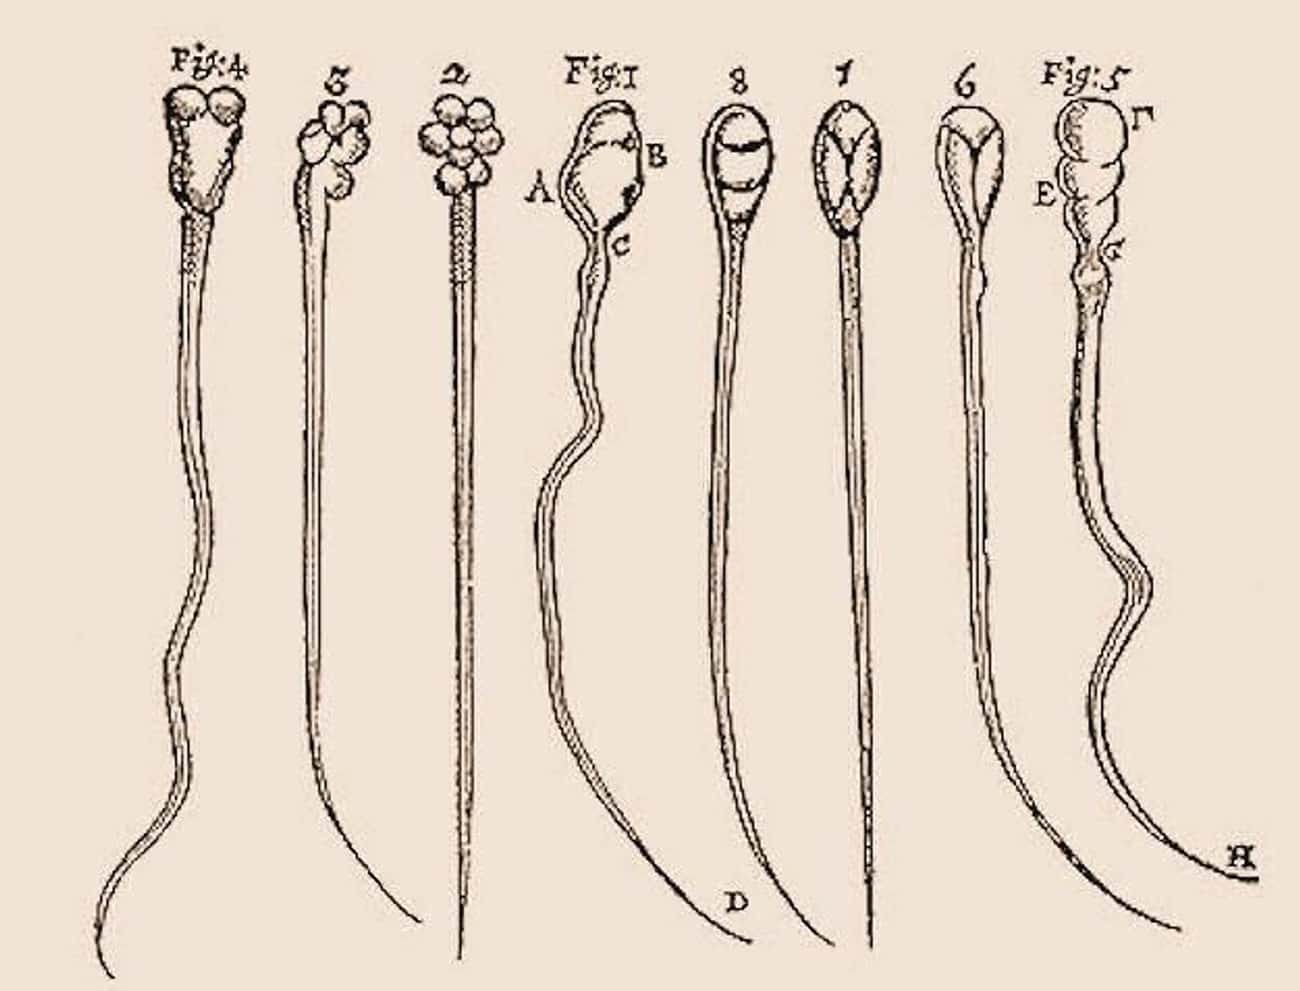 Antonie van Leeuwenhoek Discovered Sperm Cells Using His Own Fluids